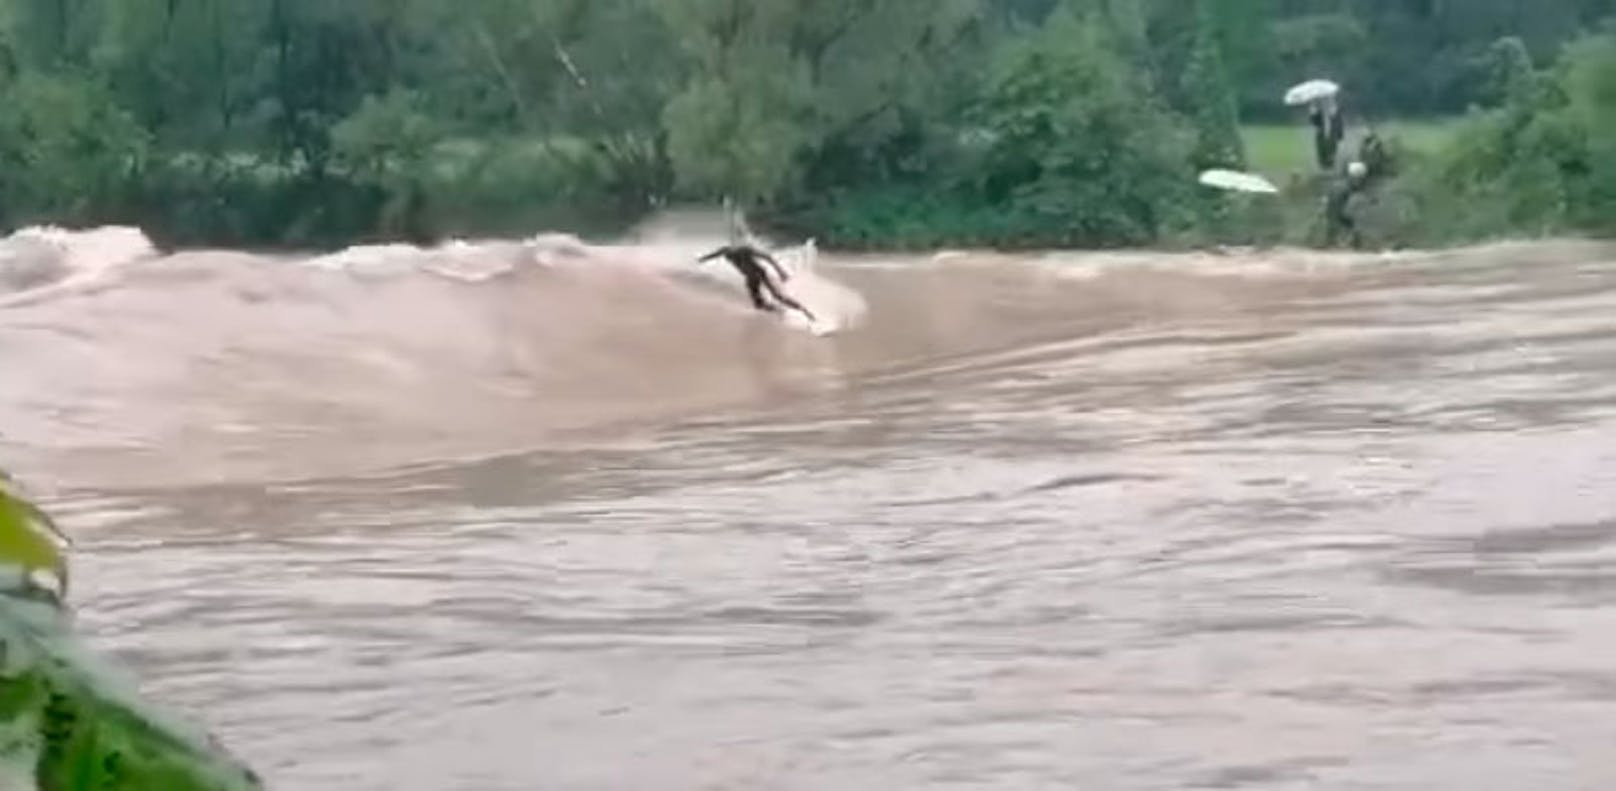 Ein Video zeigt die Surfer, die bei Hochwasser ihr Leben riskierten